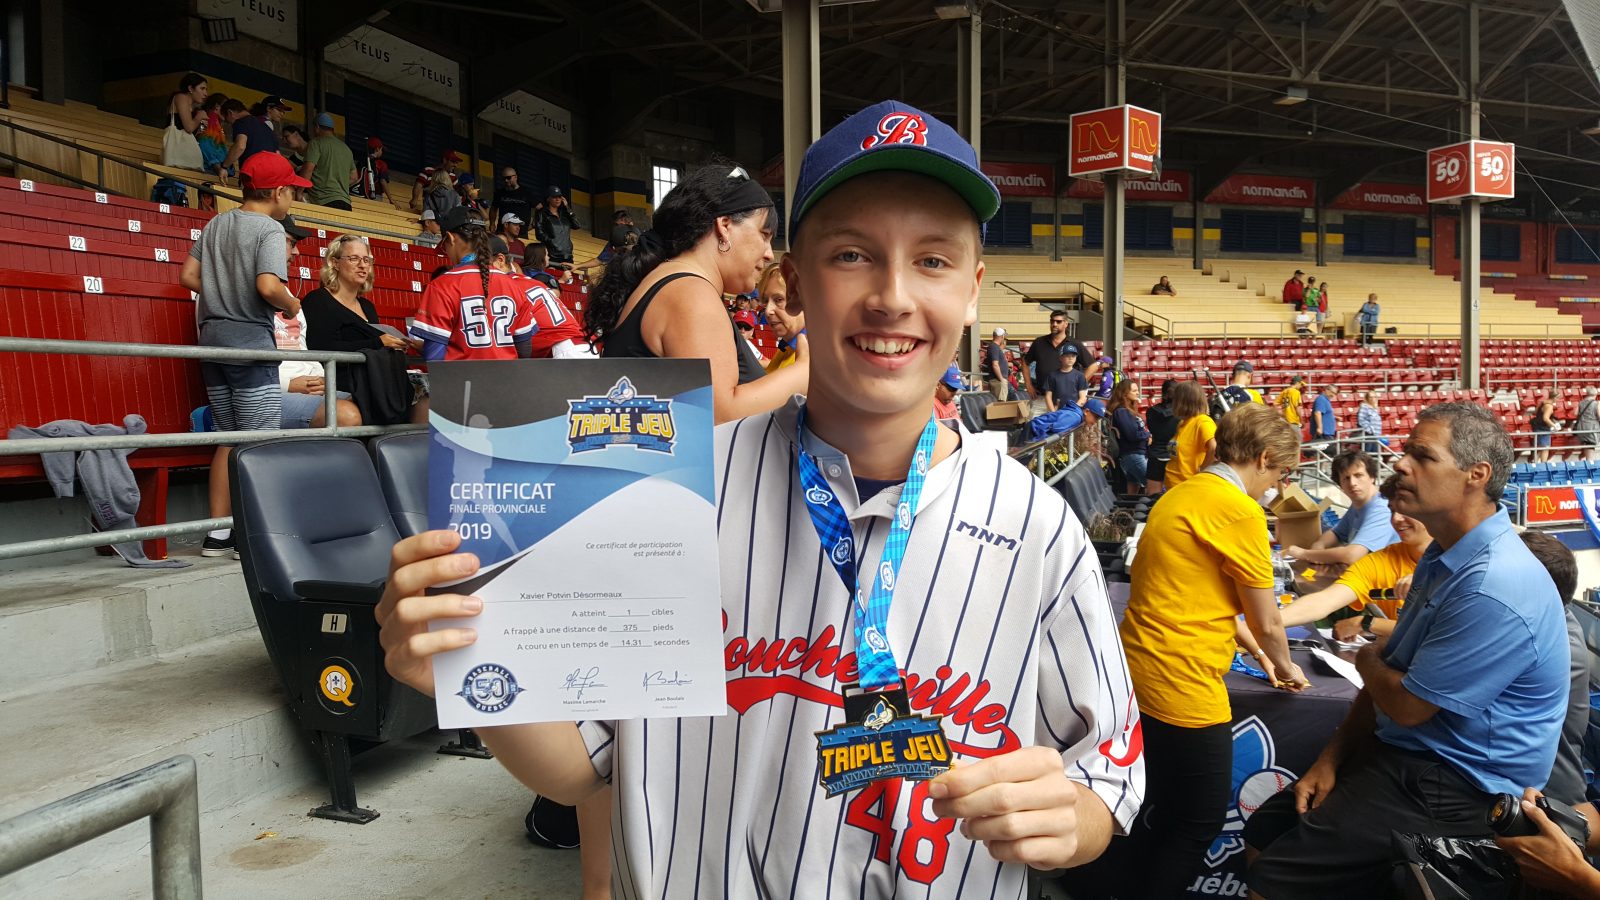 Une médaille d’or pour Xavier Potvin Désormeaux au Défi Triple jeu de Baseball Québec